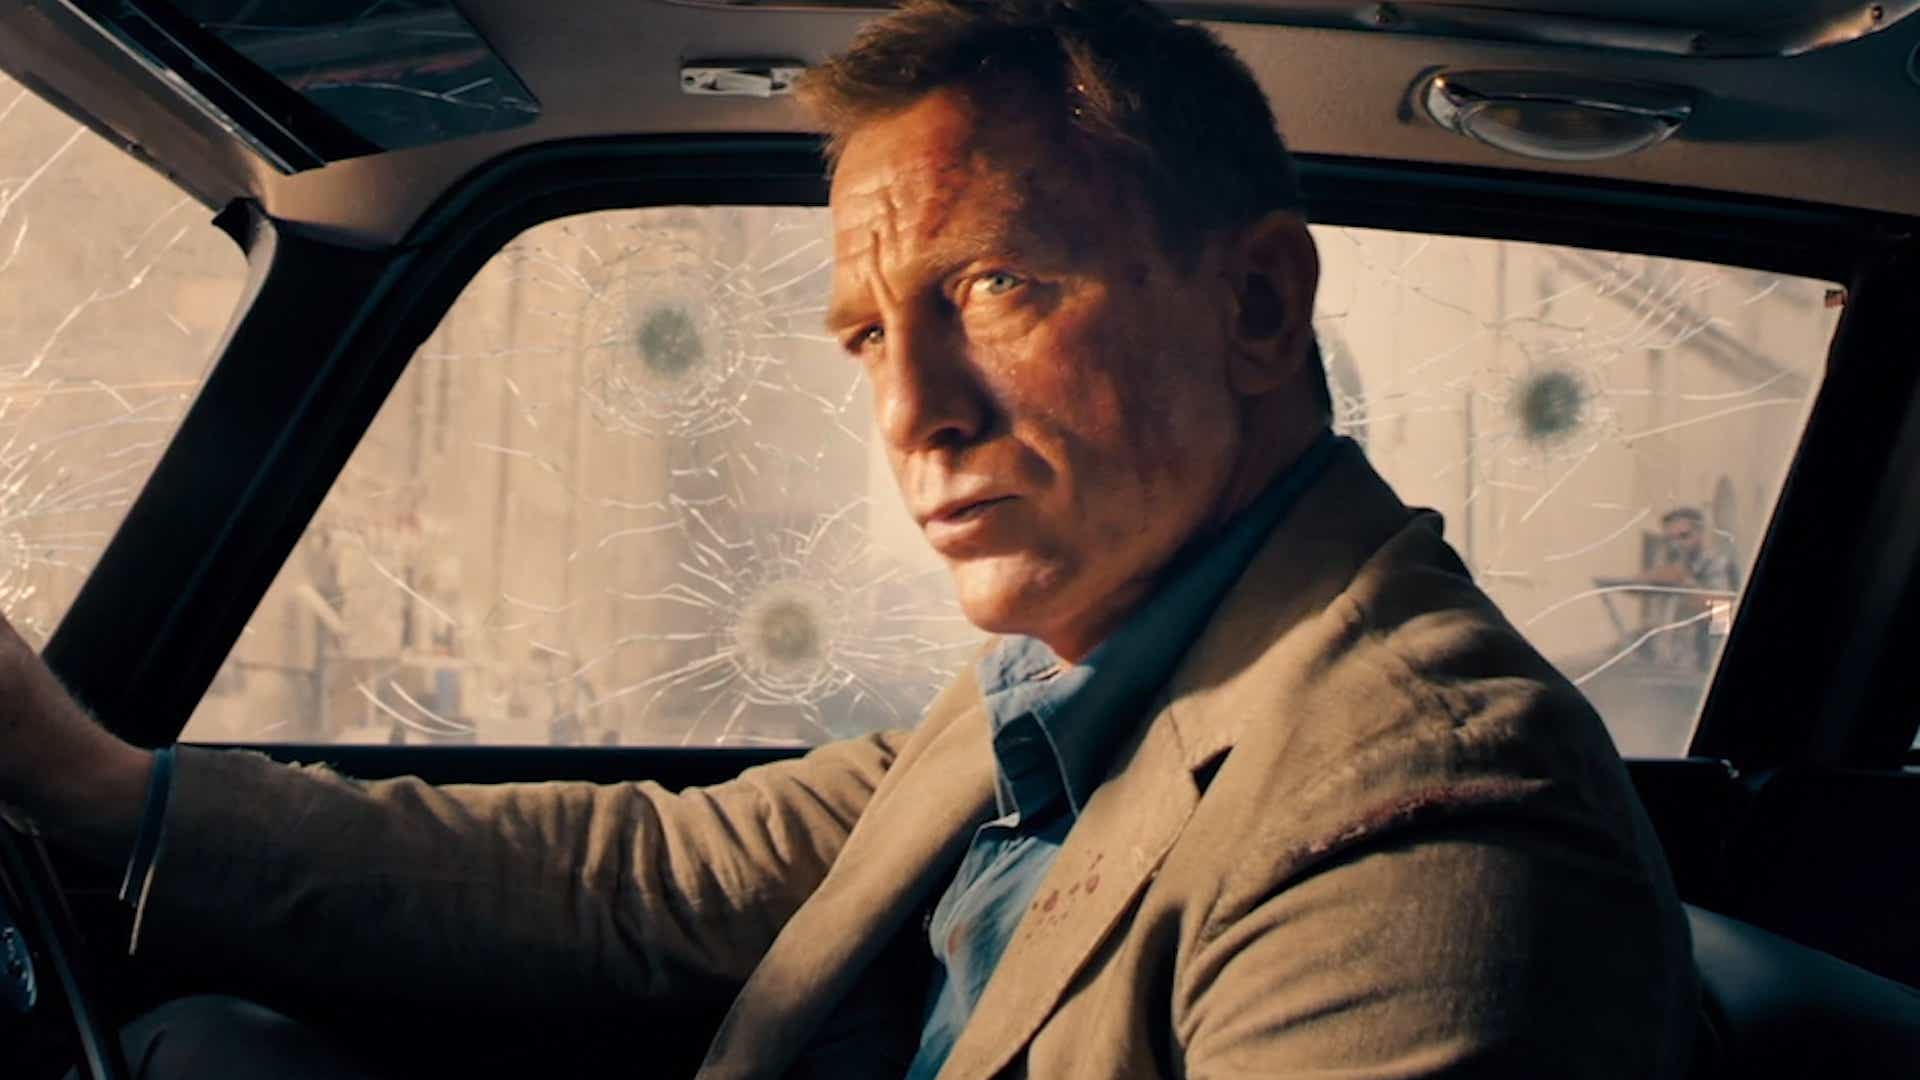 James Bond movie: Daniel Craig returns in 'No Time to Die' trailer